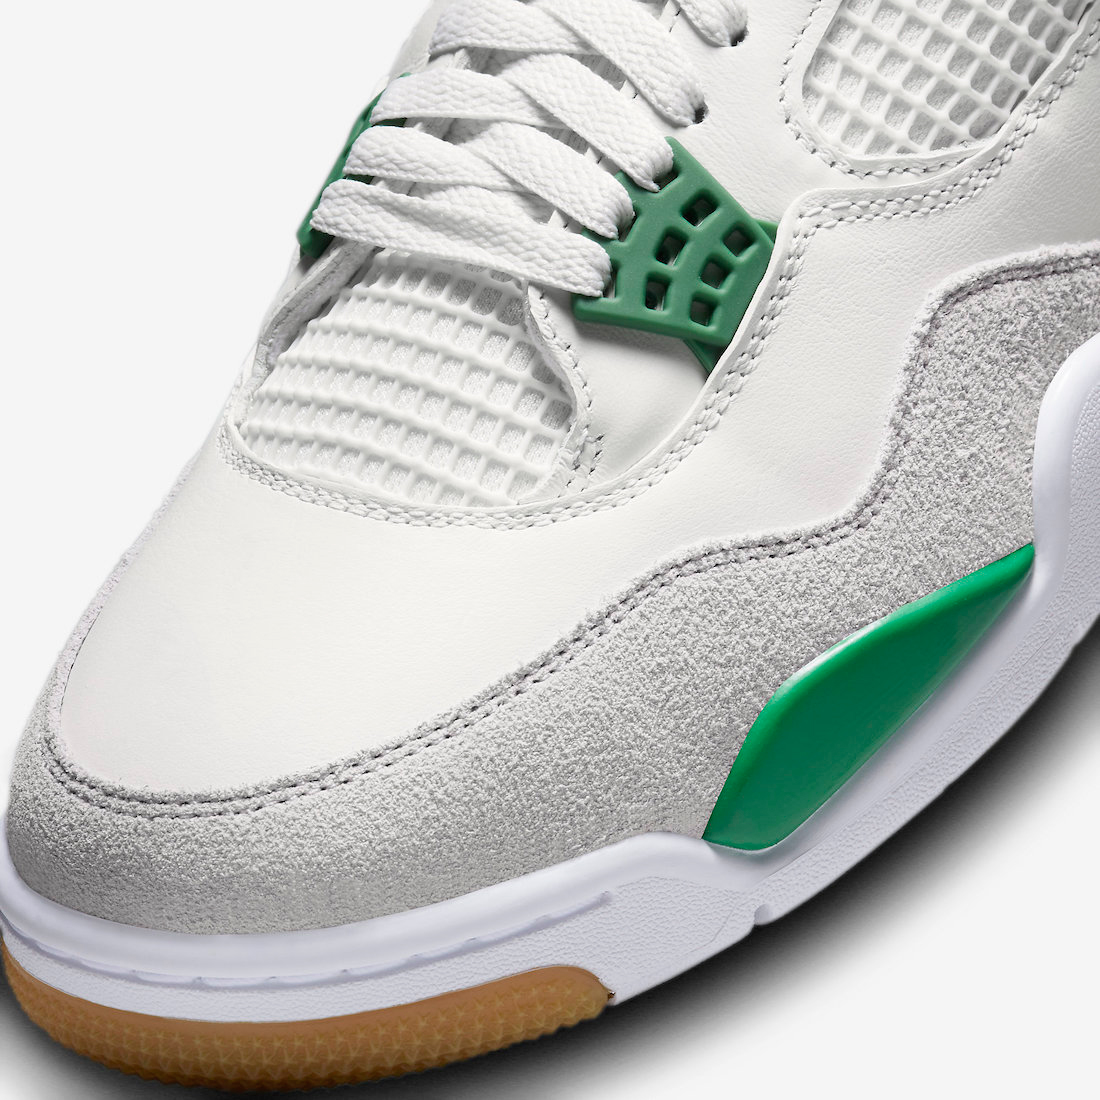 Nike-SB-Air-Jordan-4-Pine-Green-Release-Date-7